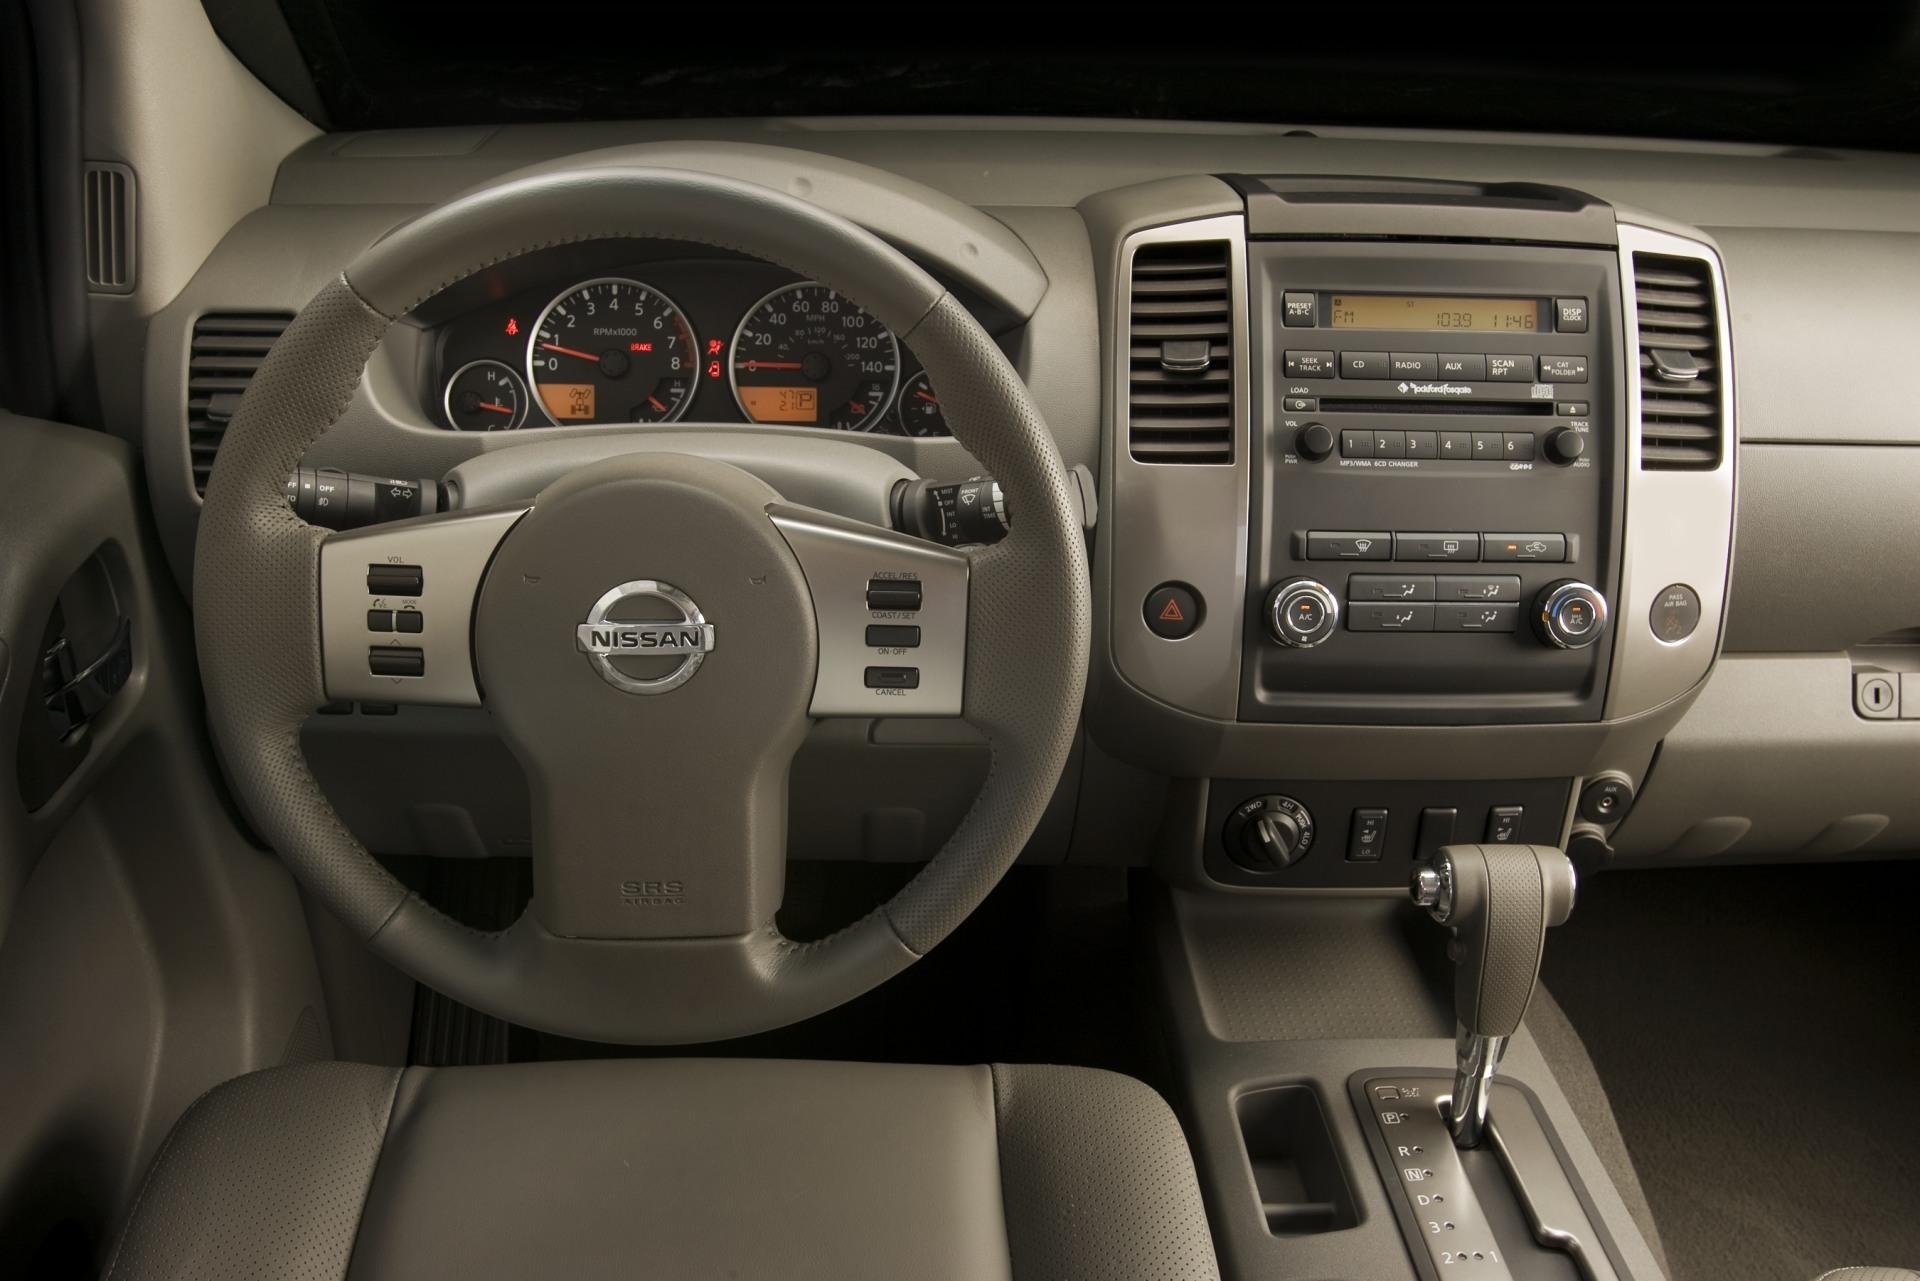 2010 Nissan Frontier